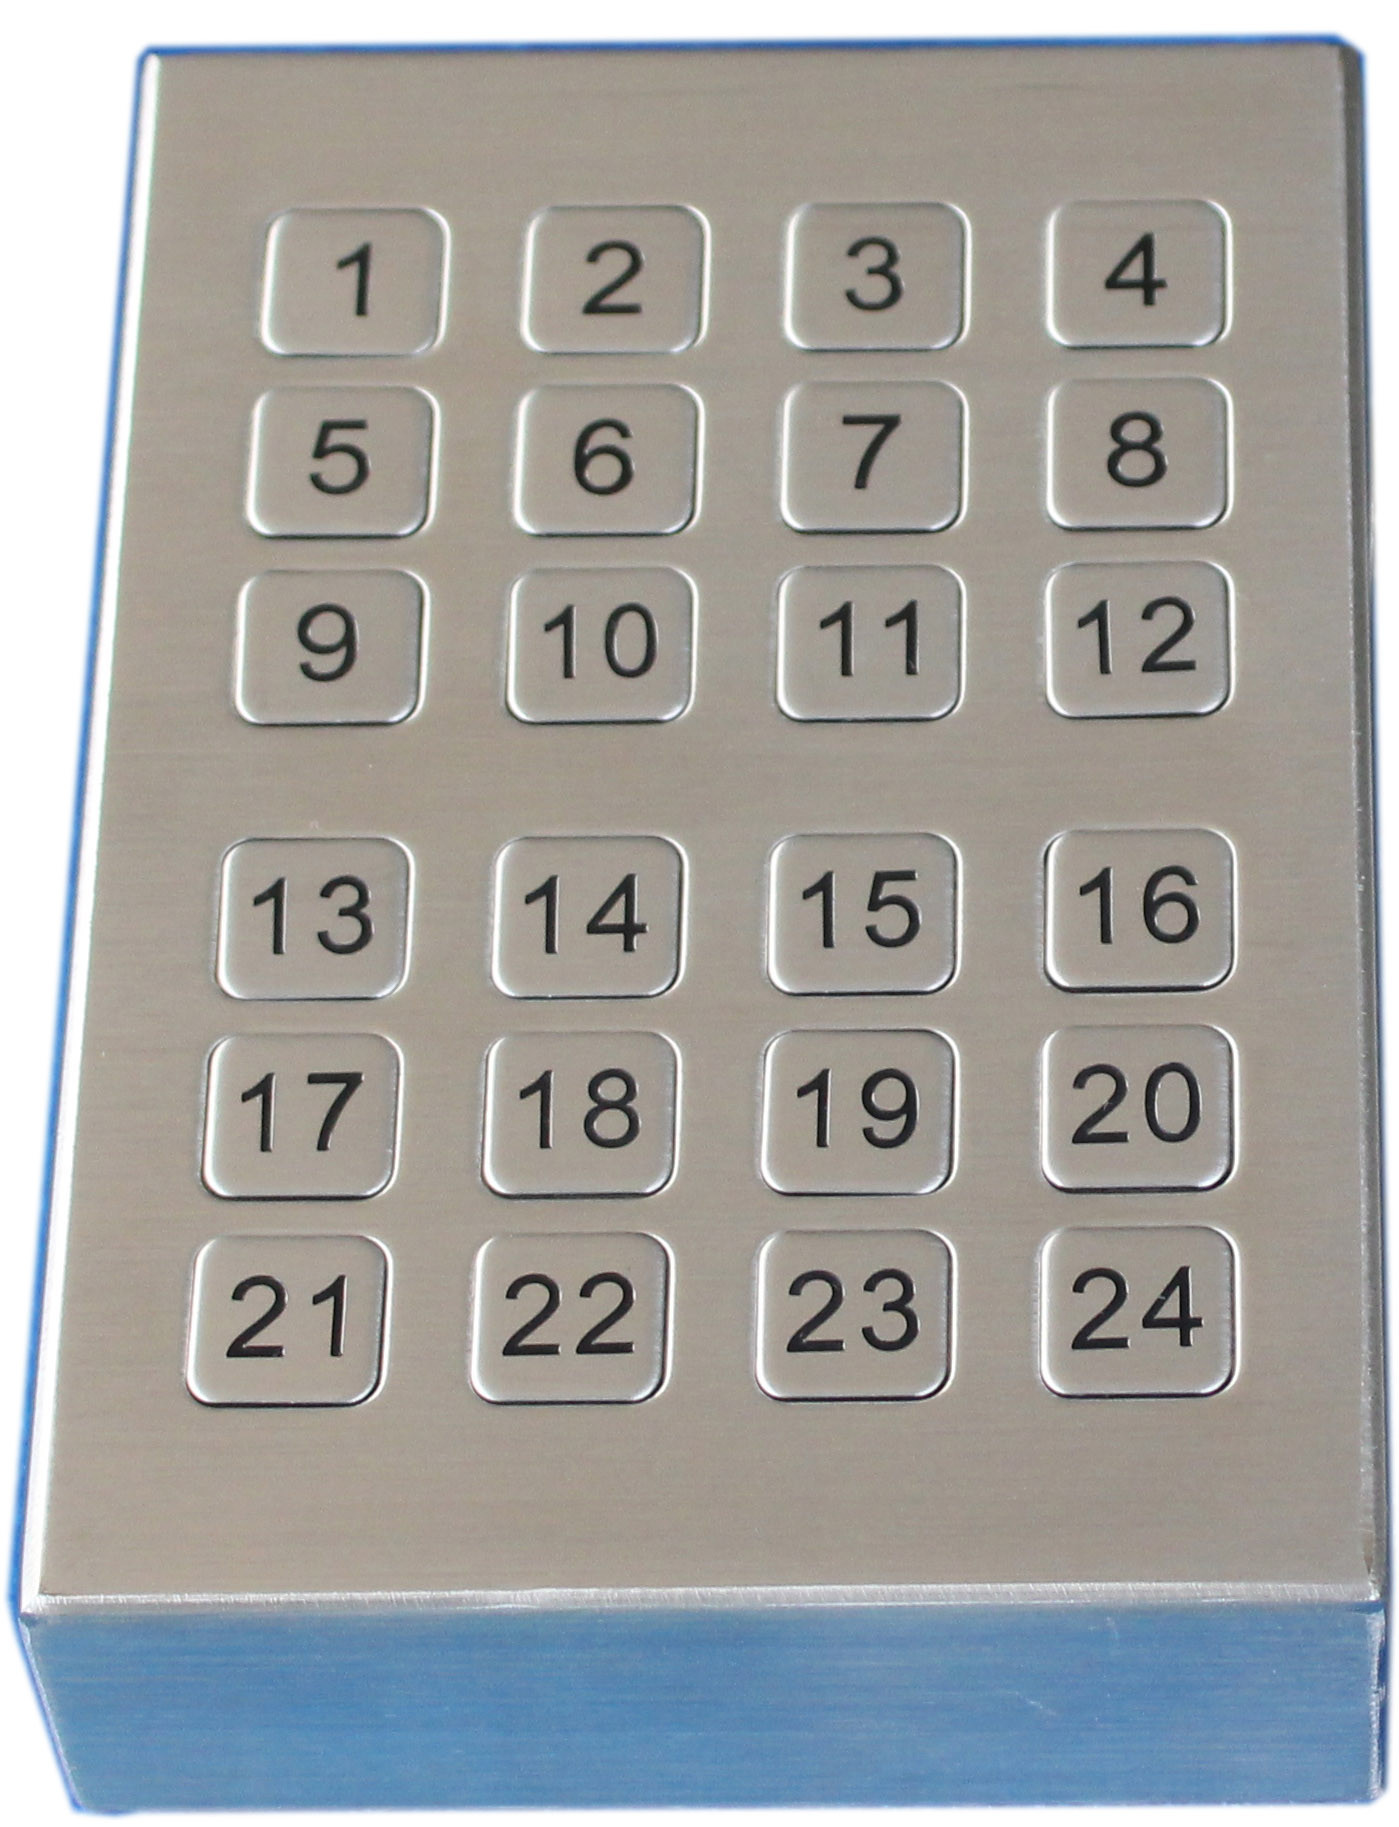 La mesa rugosa del vandalismo USB cepilló el telclado numérico del metal con 24 llaves planas